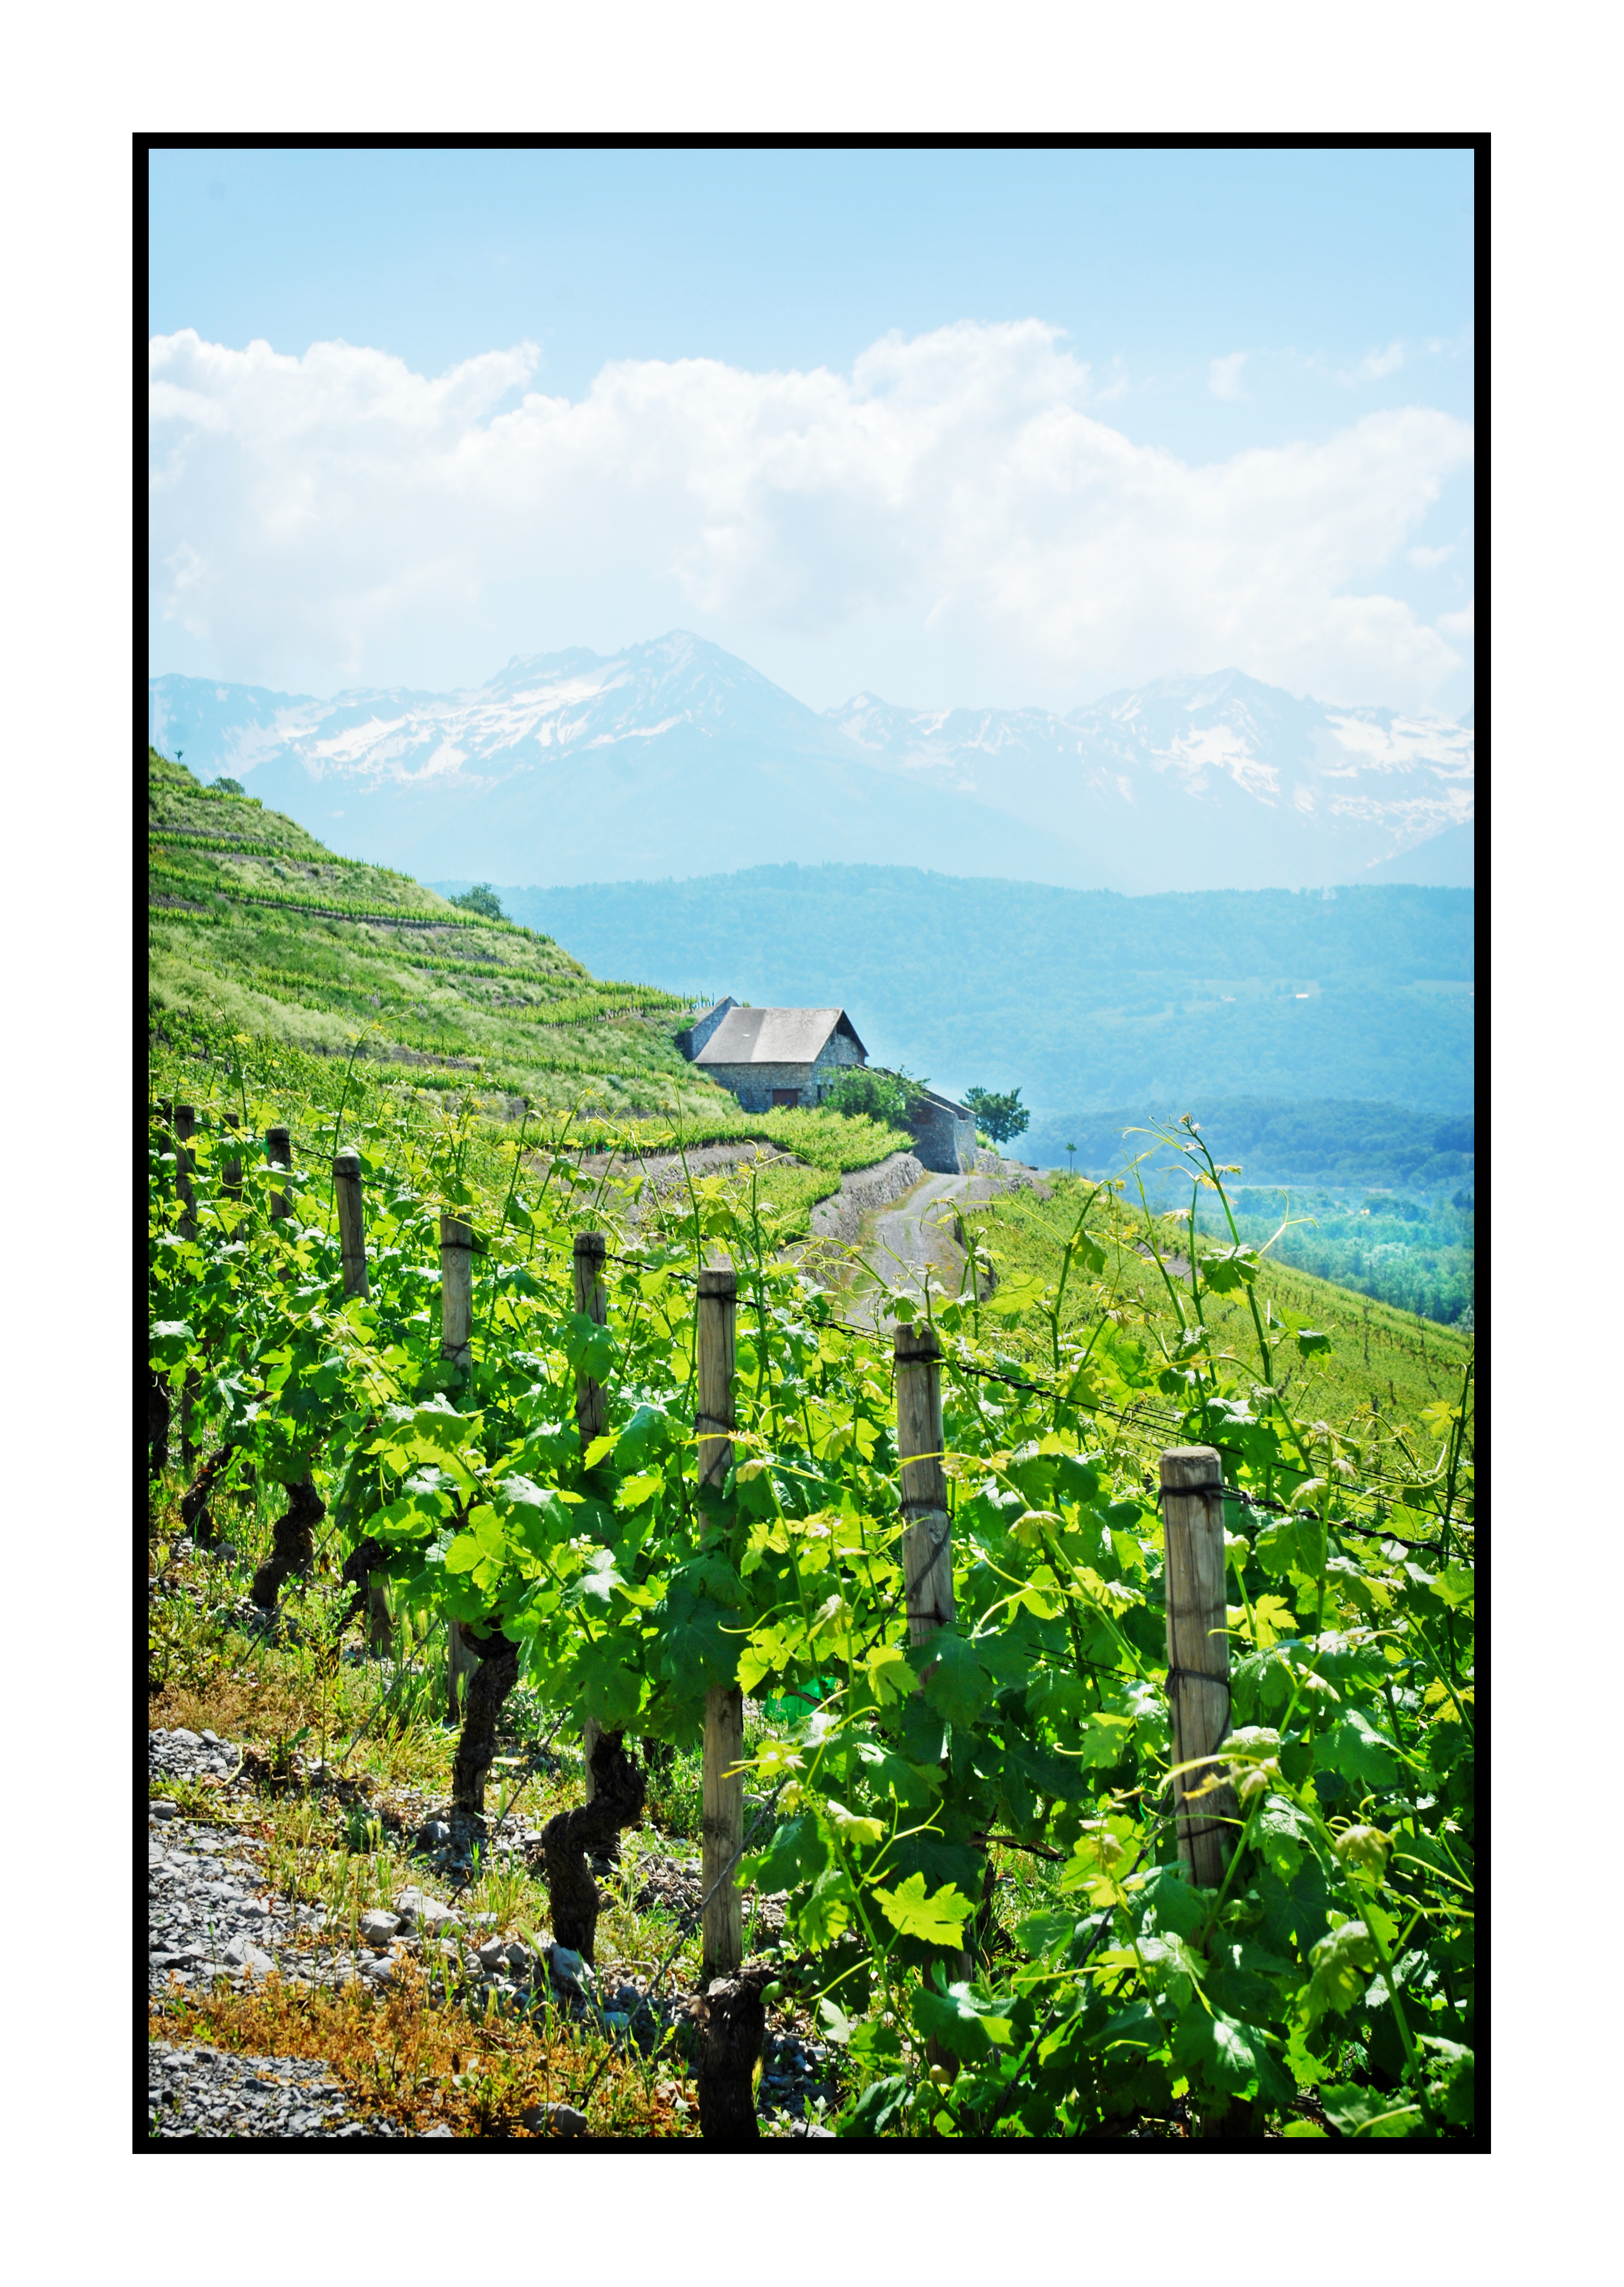 vignes-Saveurs de nos fermes-Magasin de producteurs Saveurs de nos fermes -Albertville-Gilly Sur Isère-savoie- vente directe- agriculteur-produits locaux-